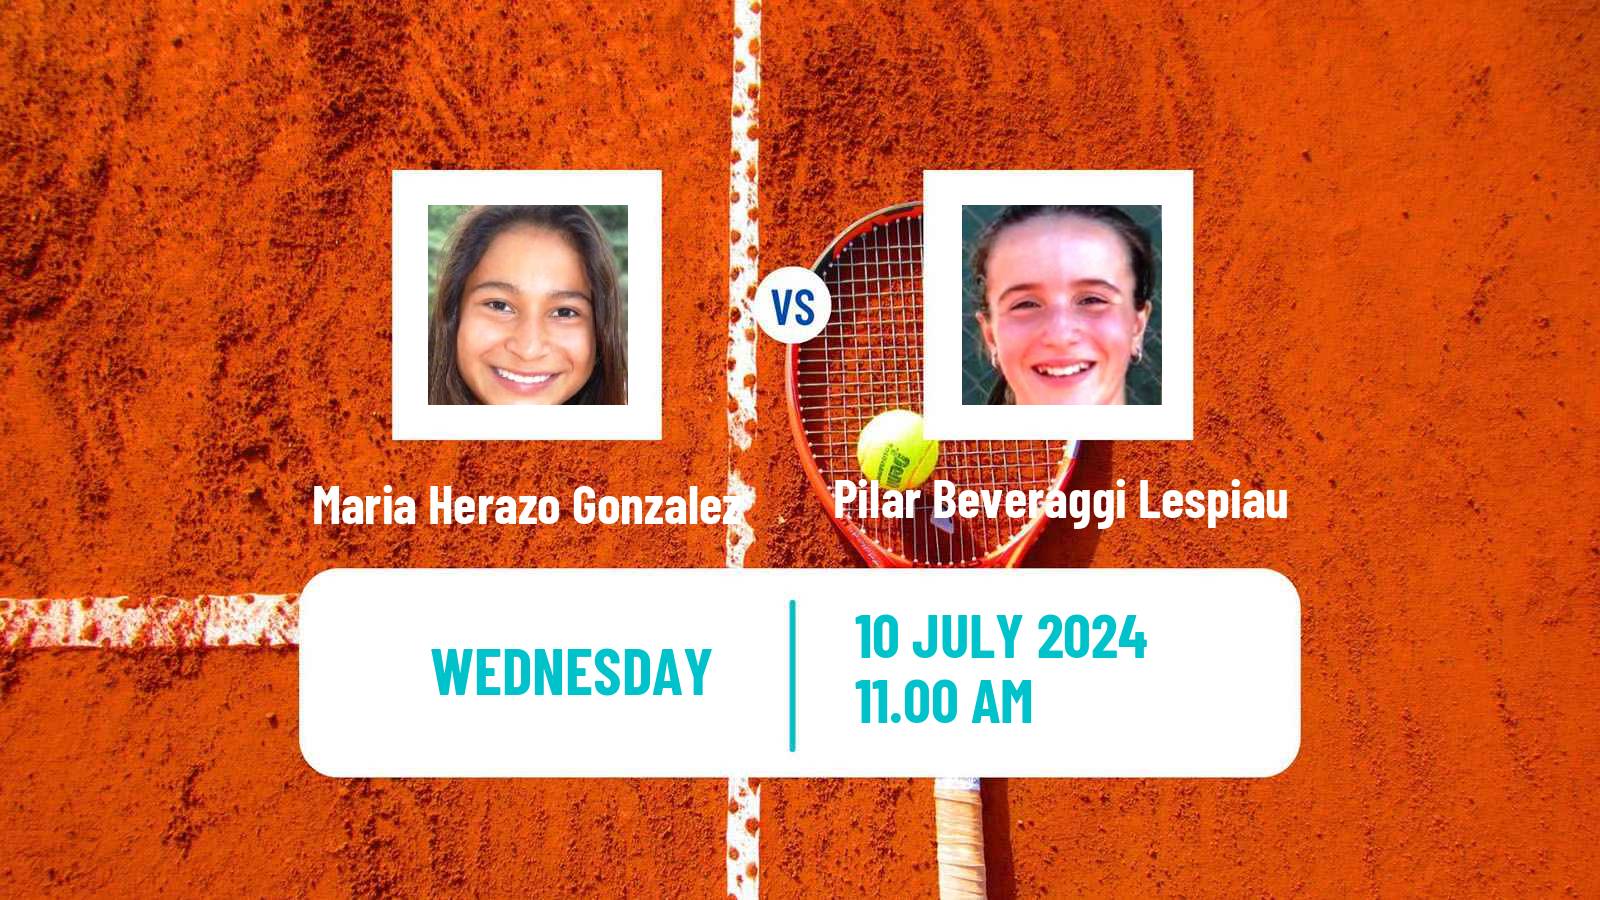 Tennis ITF W15 Lujan Women Maria Herazo Gonzalez - Pilar Beveraggi Lespiau